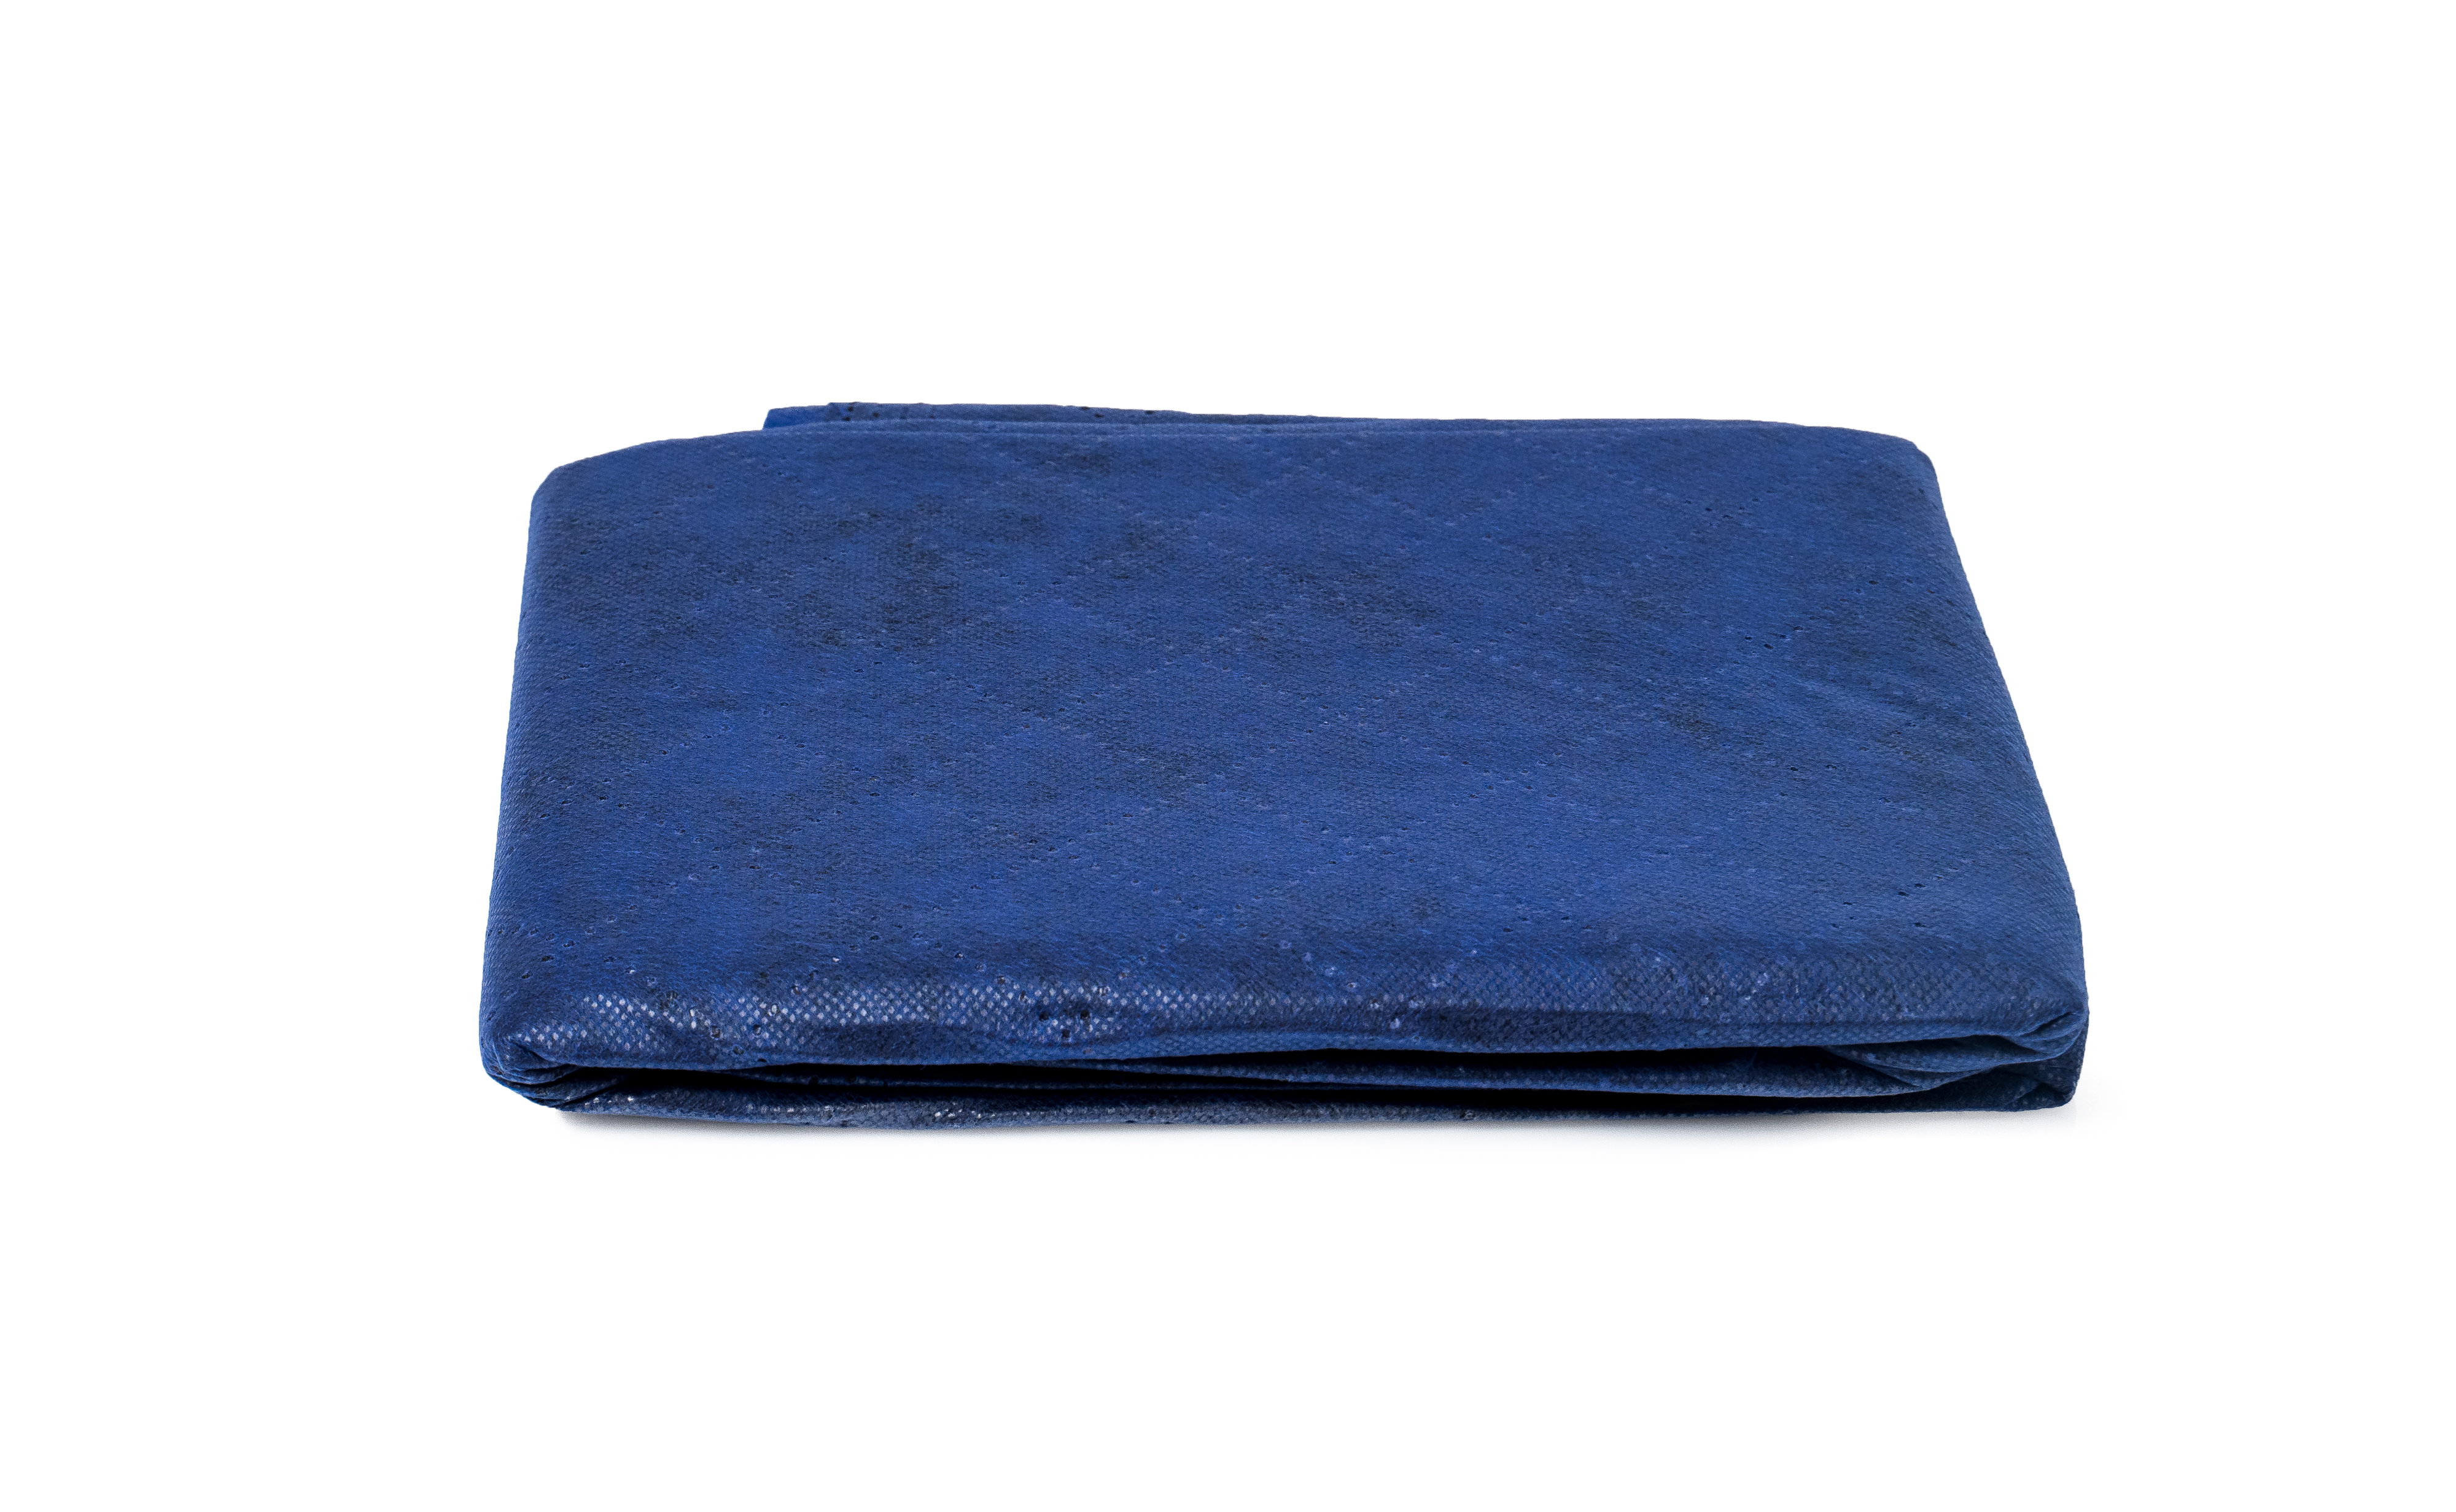 Rescue Trade Einmaldecke mit Polyesterfüllung
Einmaldecke Maß: 1.90 x 1.10 m
Farbe: blau
Einzeln hygienisch und platzsparend im Polybeutel verpackt